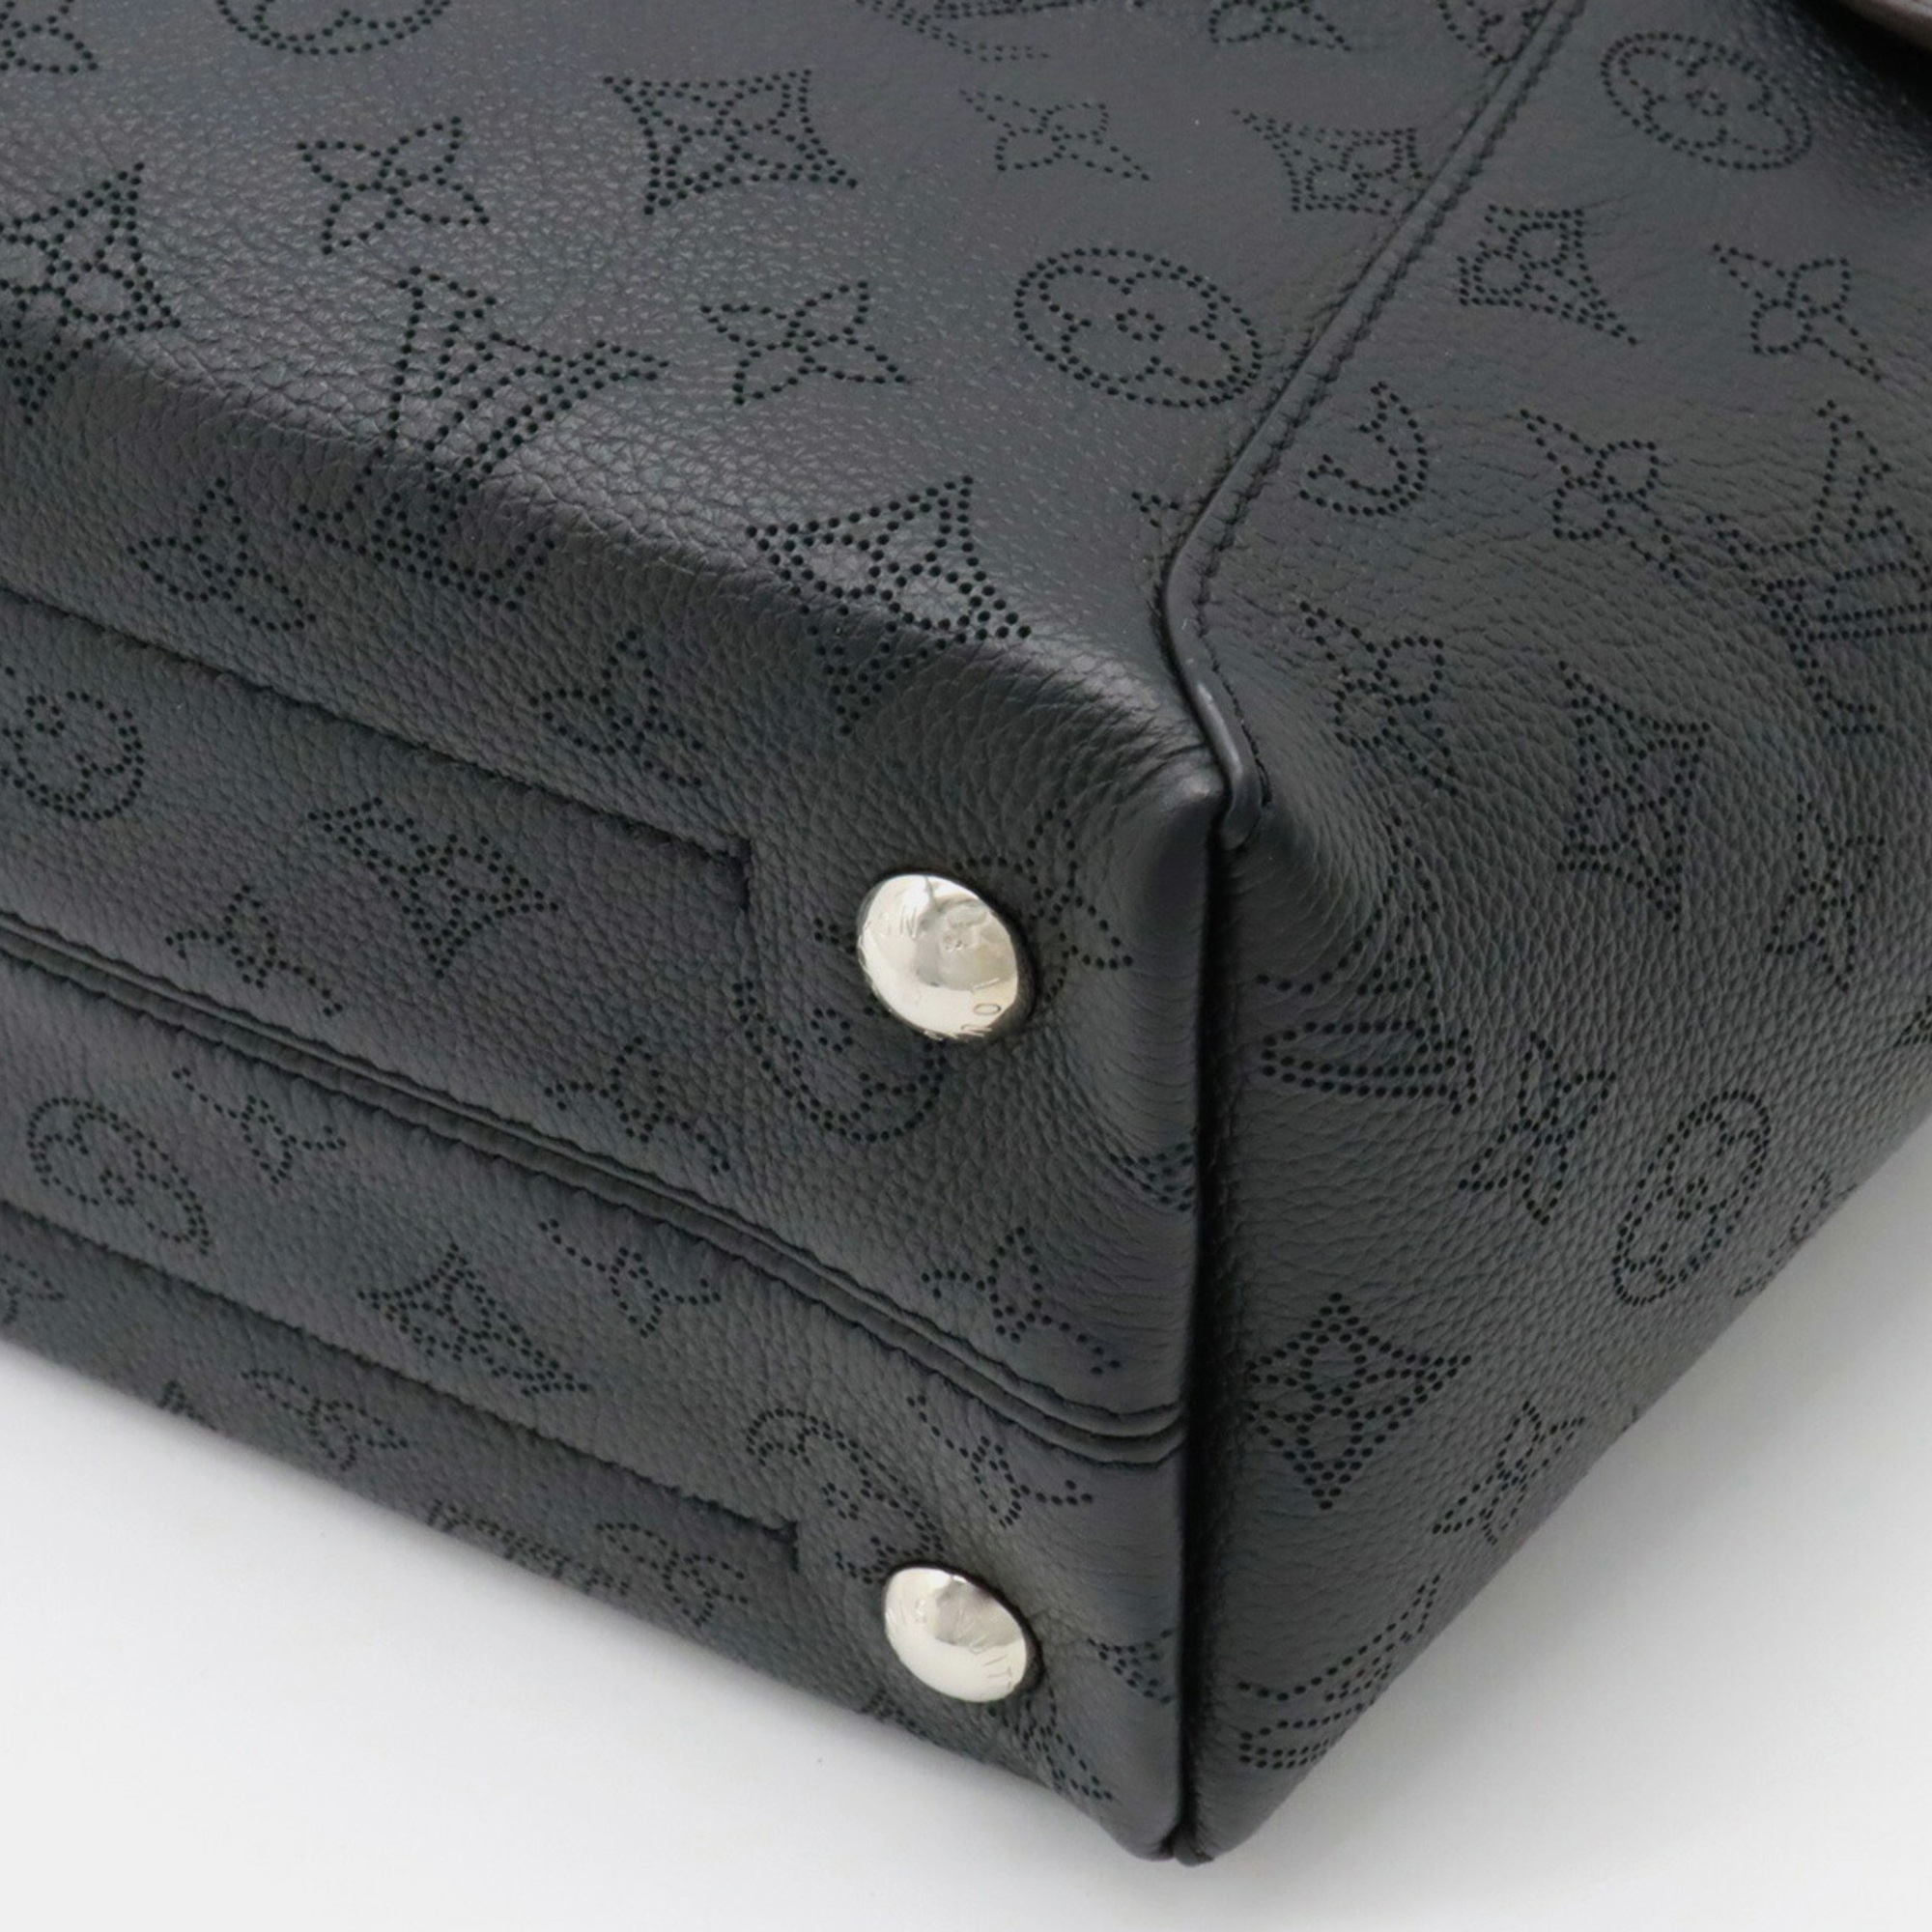 Louis Vuitton Black Leather Monogram Mahina Hina PM Hobo Bag